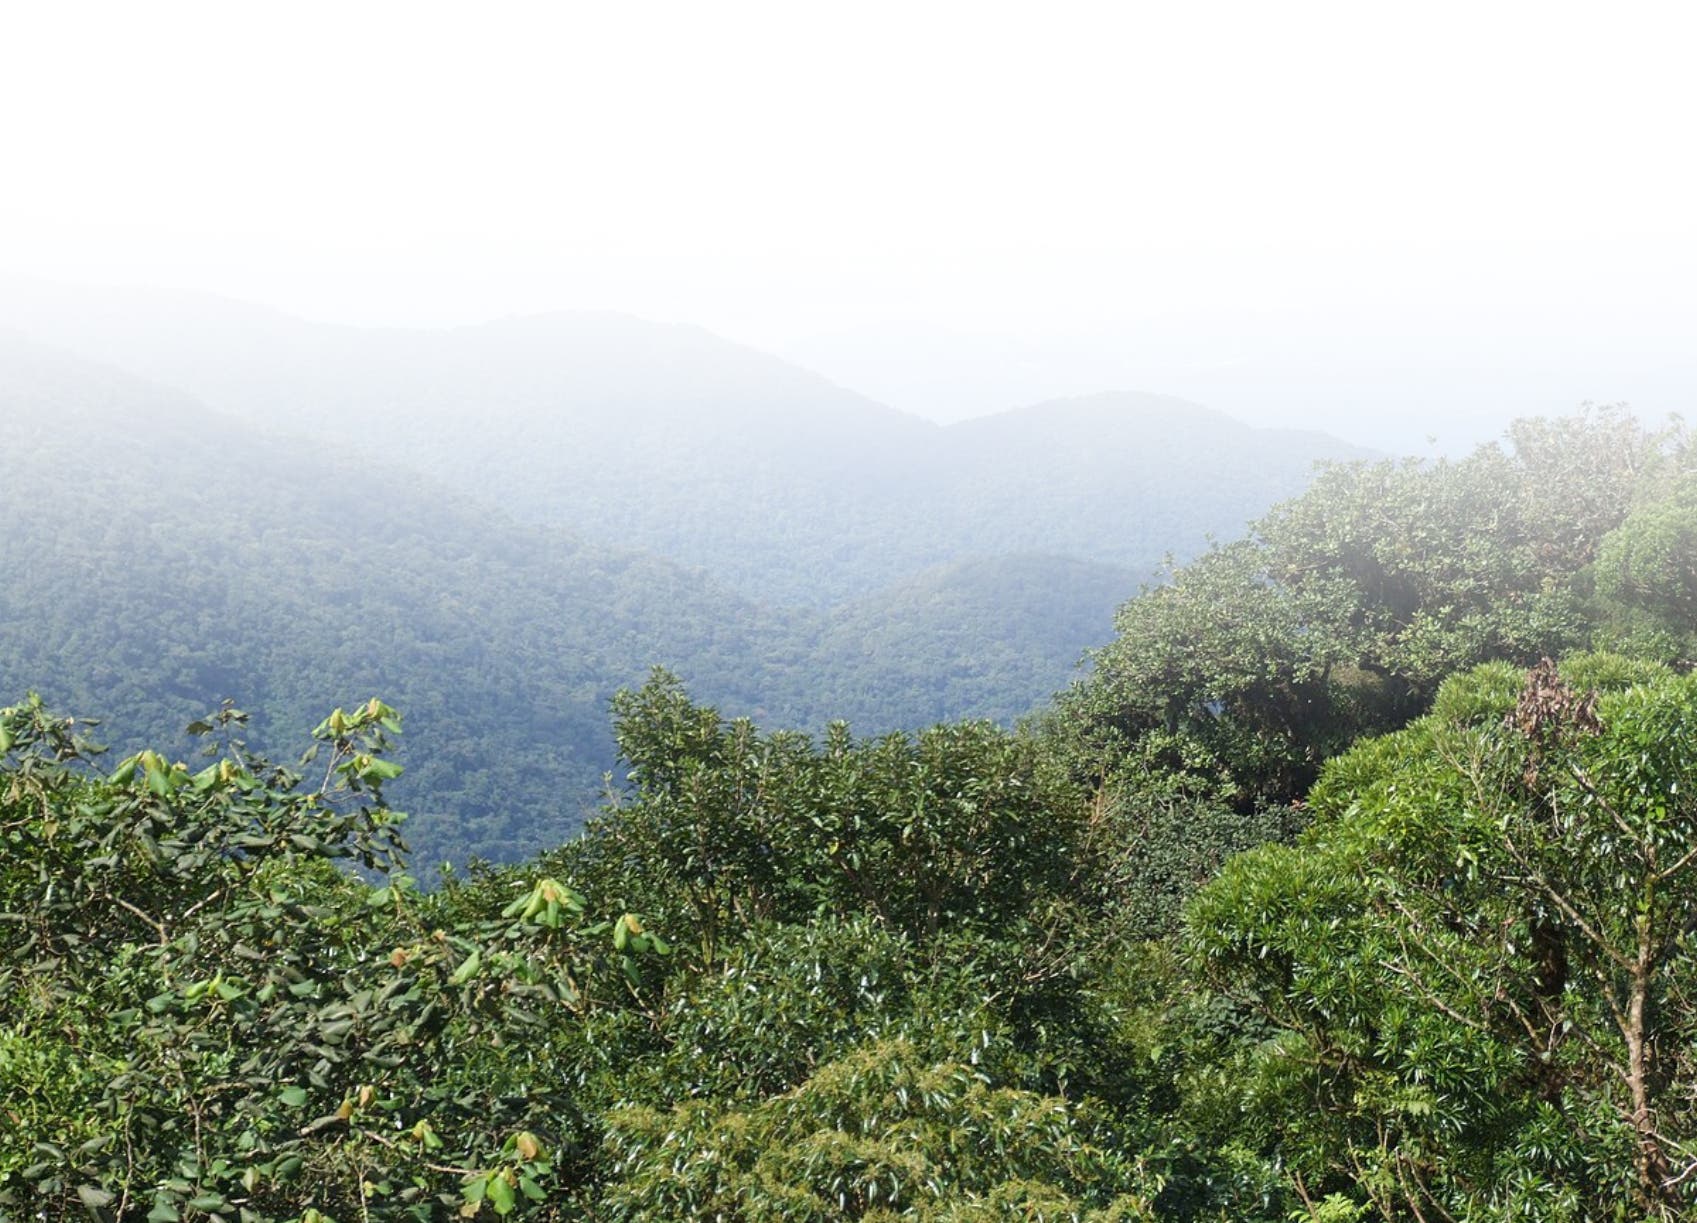 Bosques tropicales, influyen en equilibrio ambiental del planeta